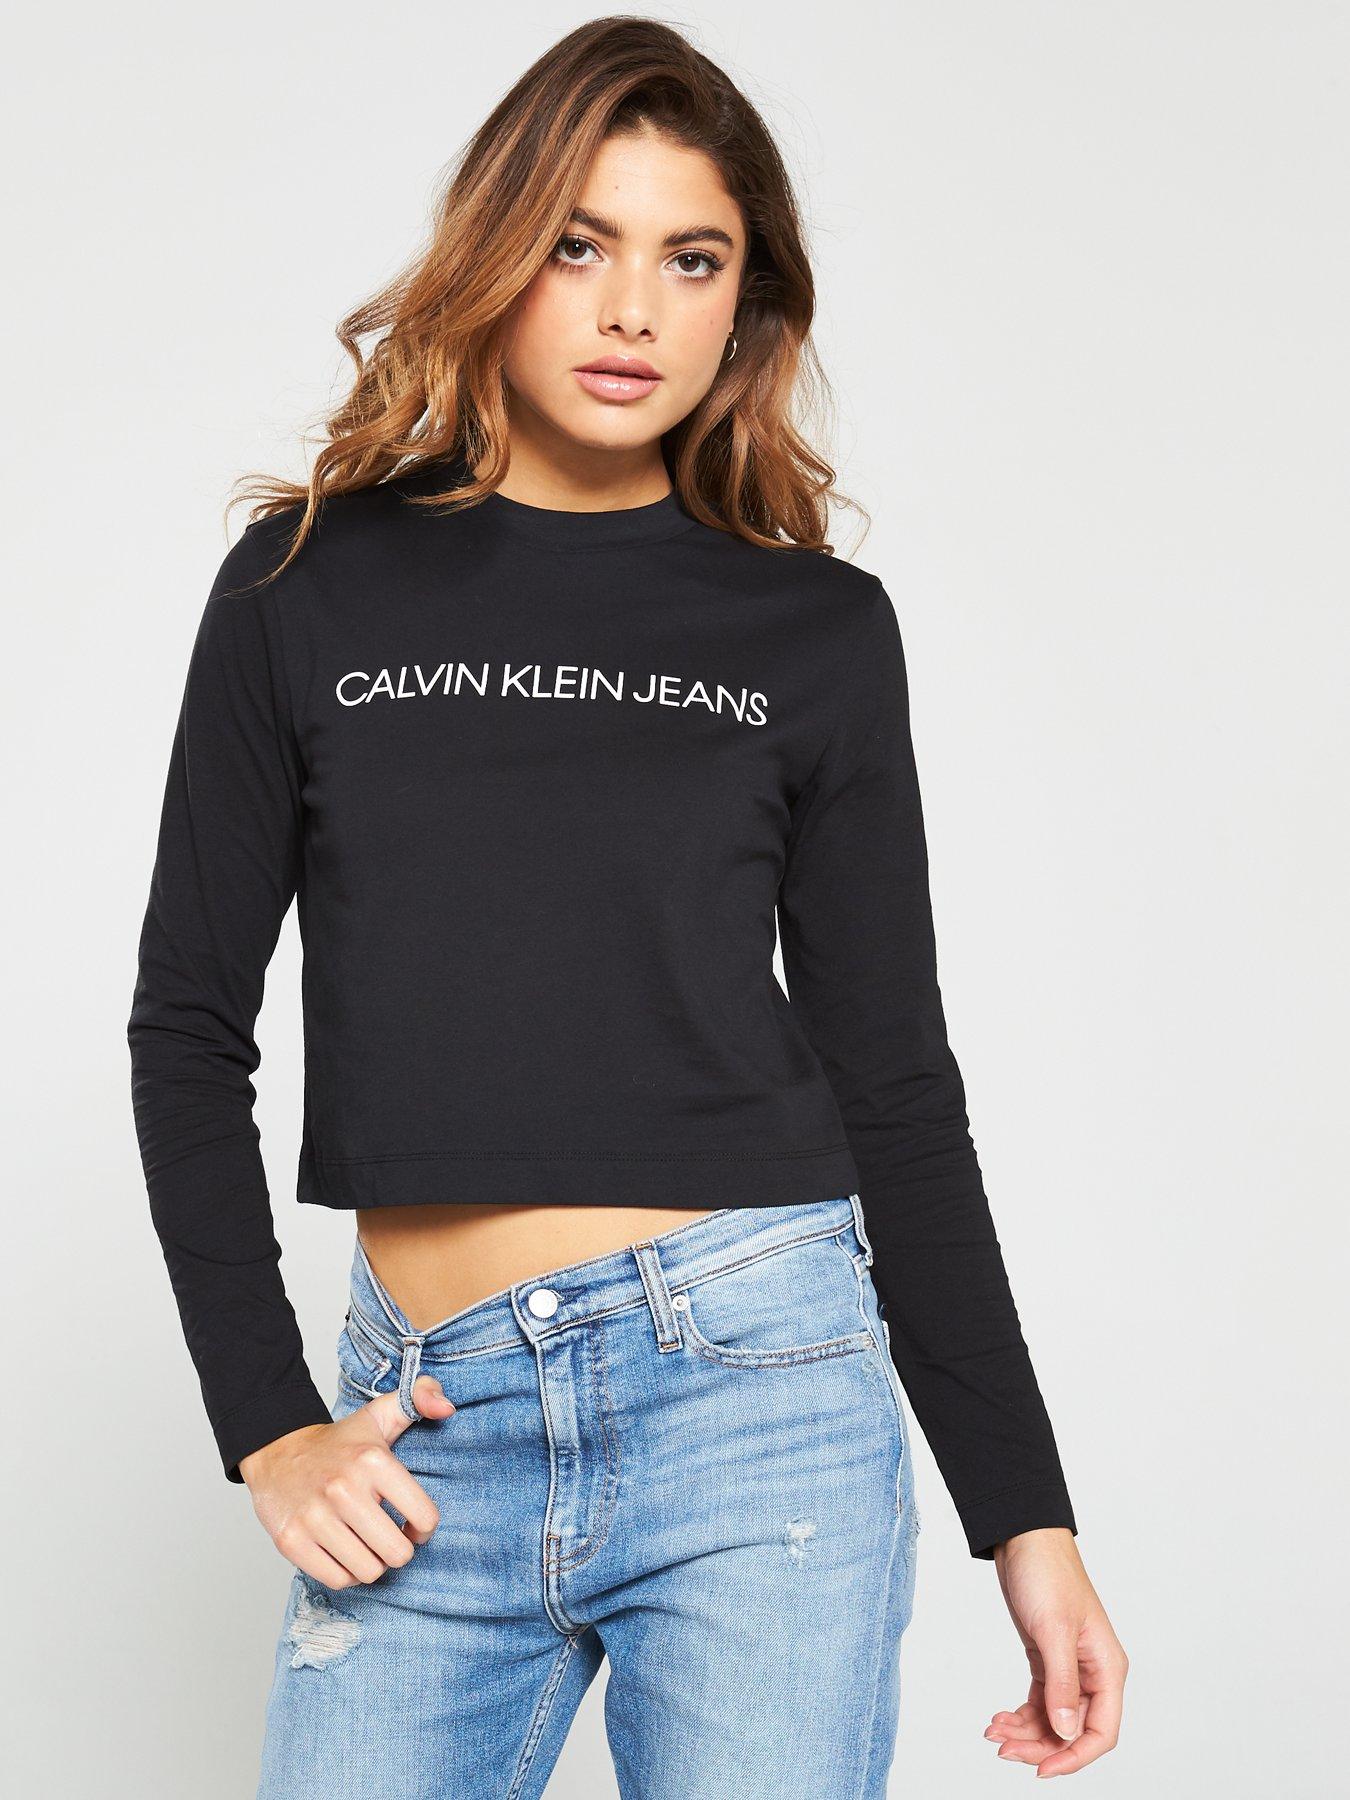 calvin klein jeans t shirt full sleeve